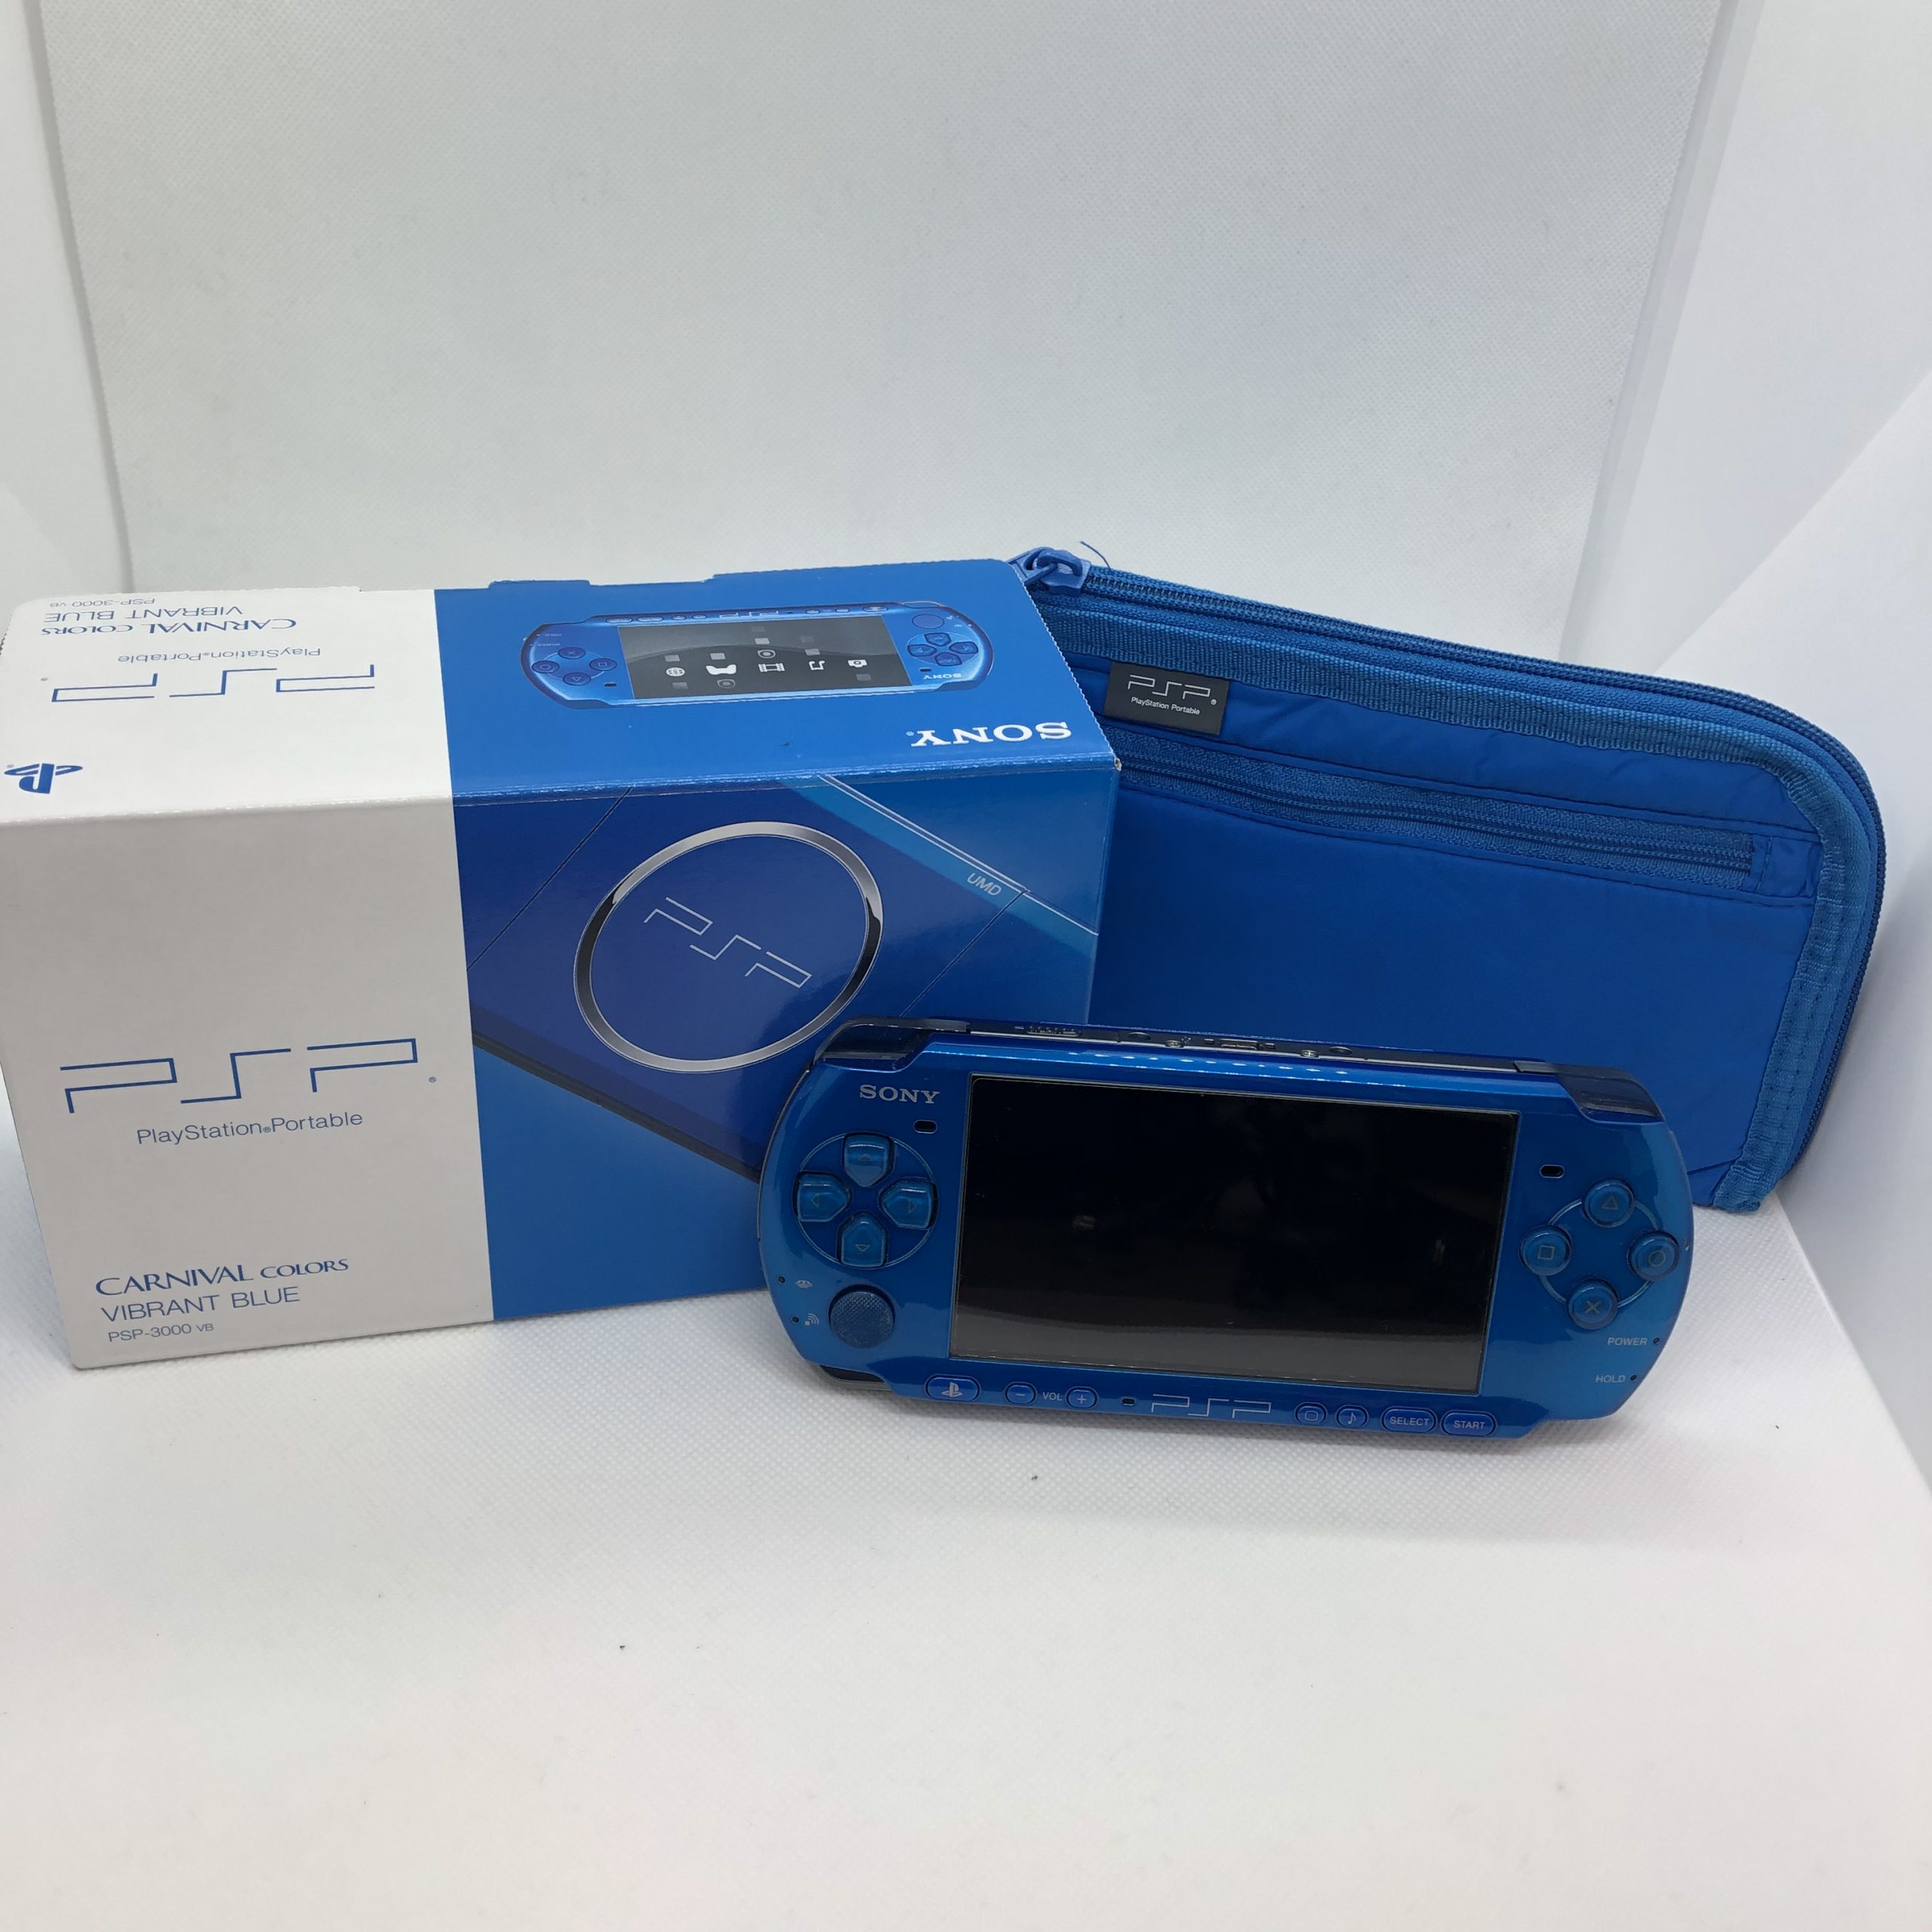 PSP-3000 バリューパック 青 買取実績 | 玉光堂